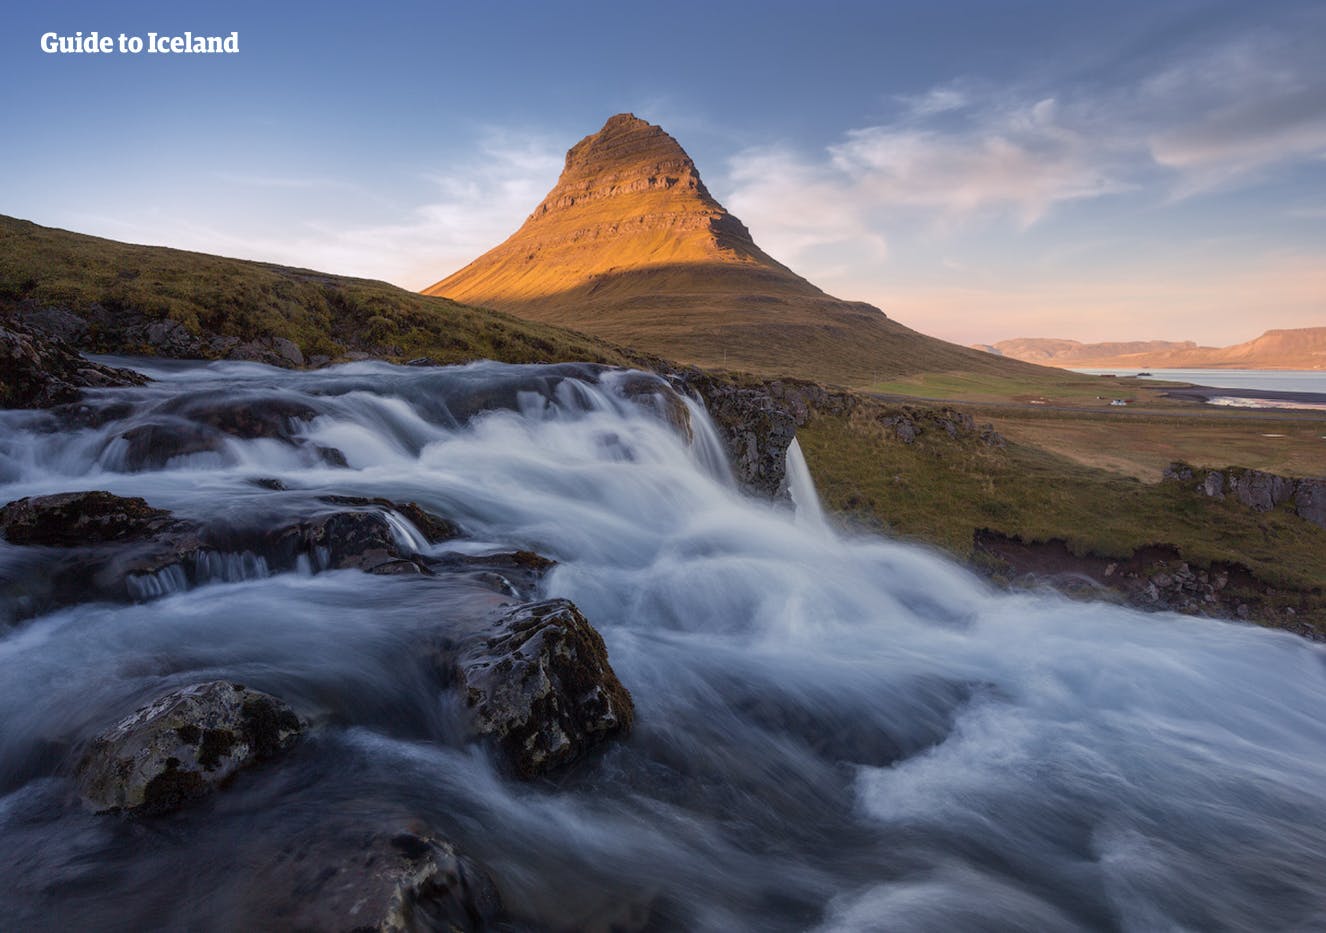 Auf der Halbinsel Snaefellsnes gibt es unzählige Naturwunder wie den majestätischen Berg Kirkjufell und seinen Wasserfall.